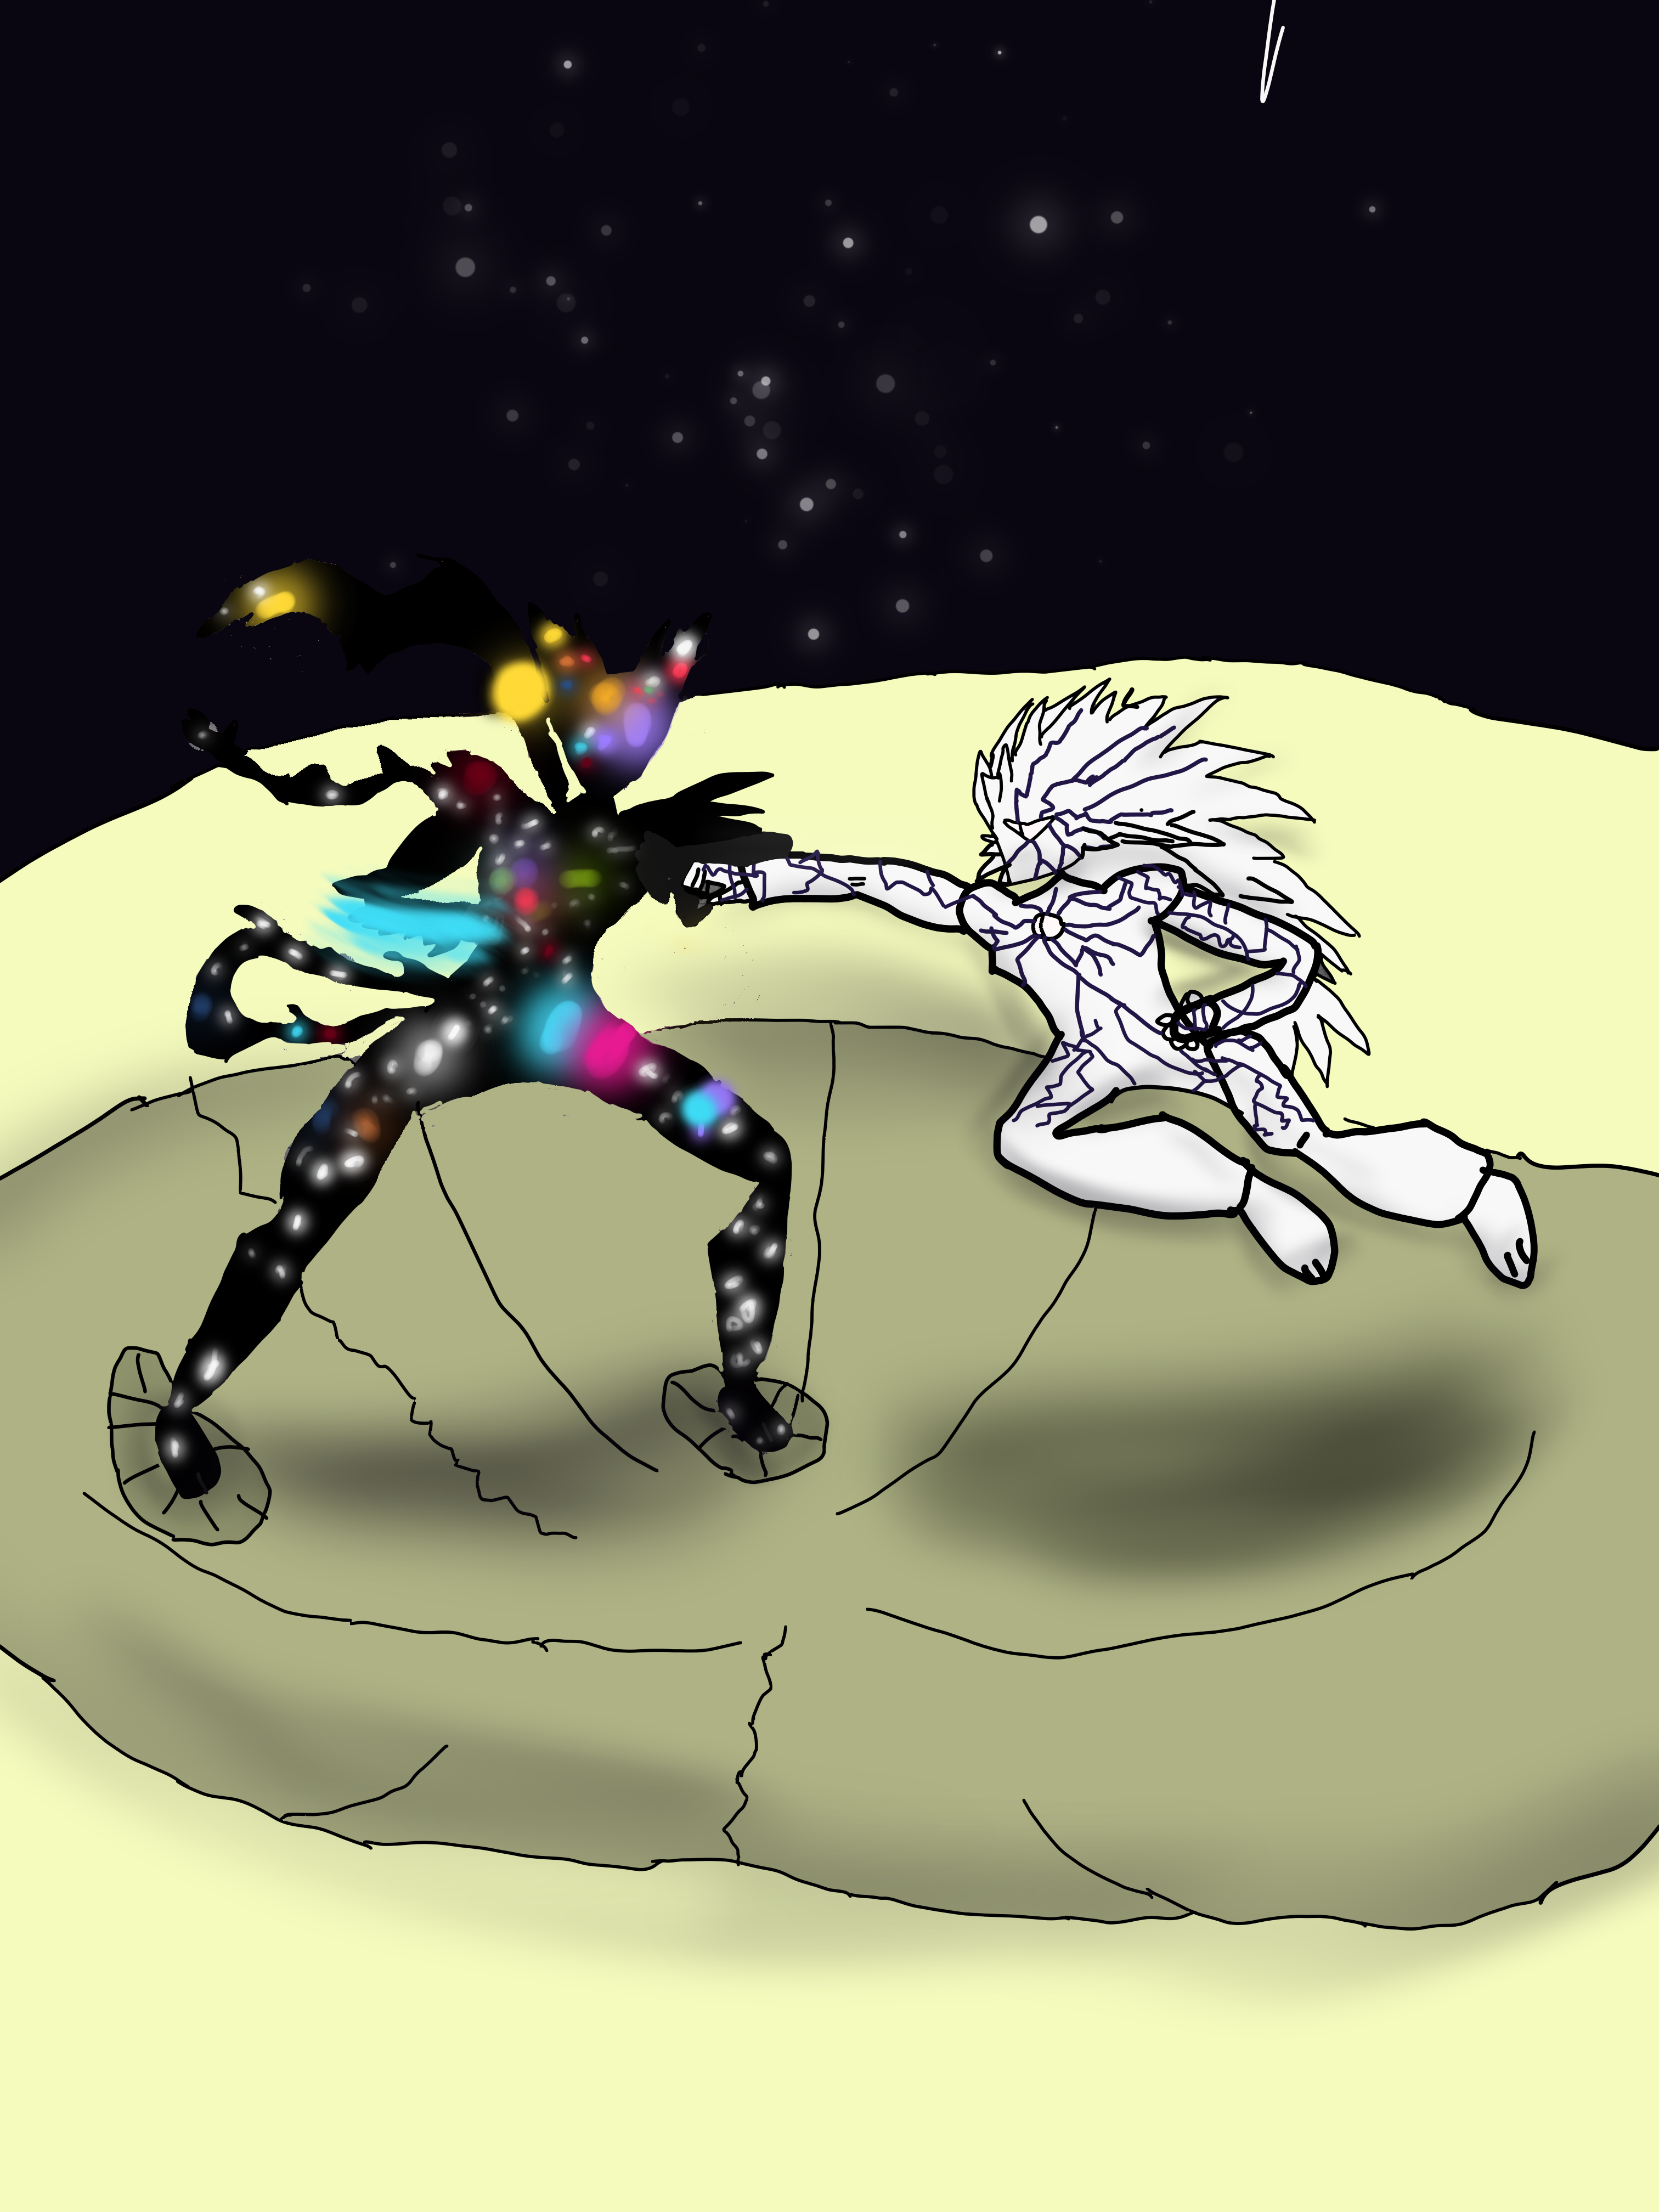 Cosmic Fear Mode Garou vs Meteoric Burst Boros. fanart by me : r/OnePunchMan